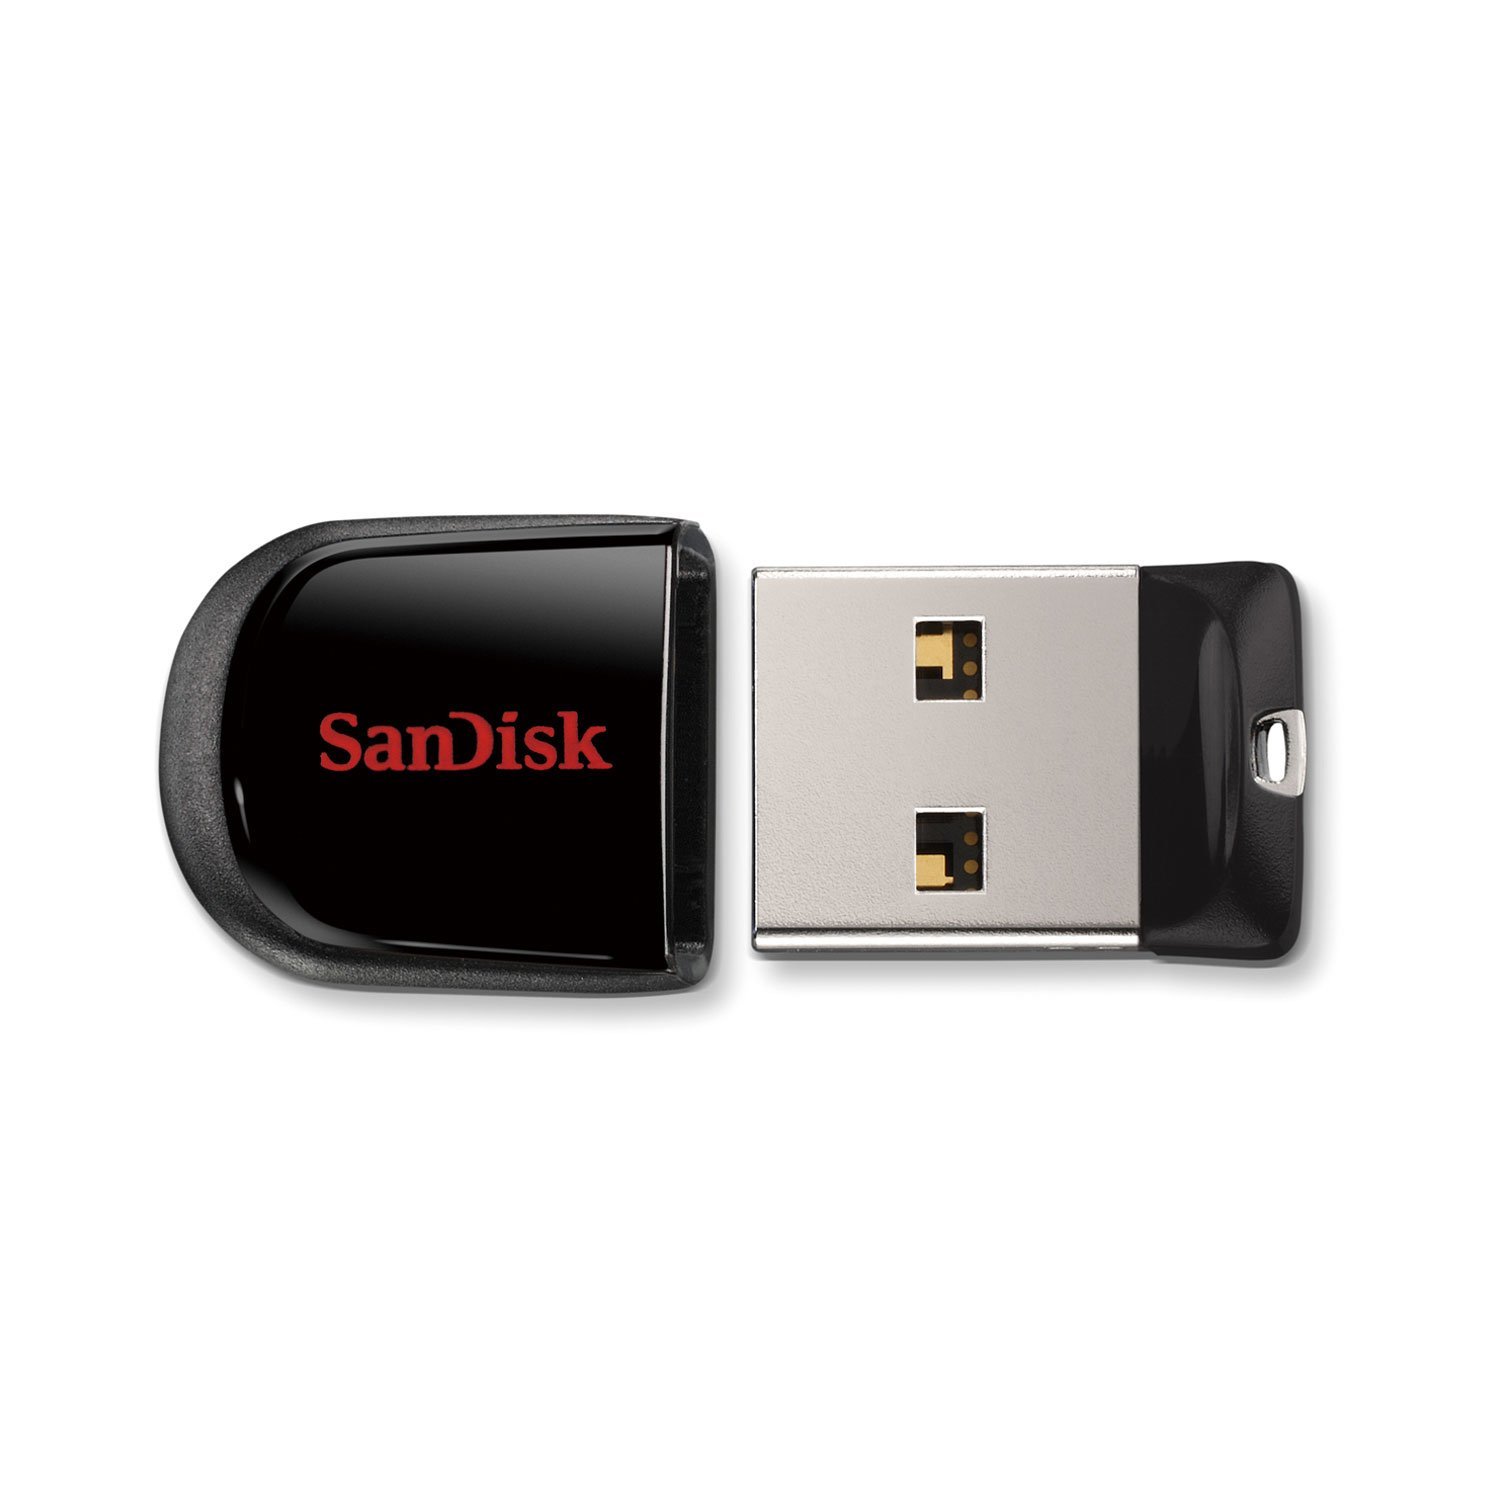 【SanDisk】フラッシュメモリー 32GB